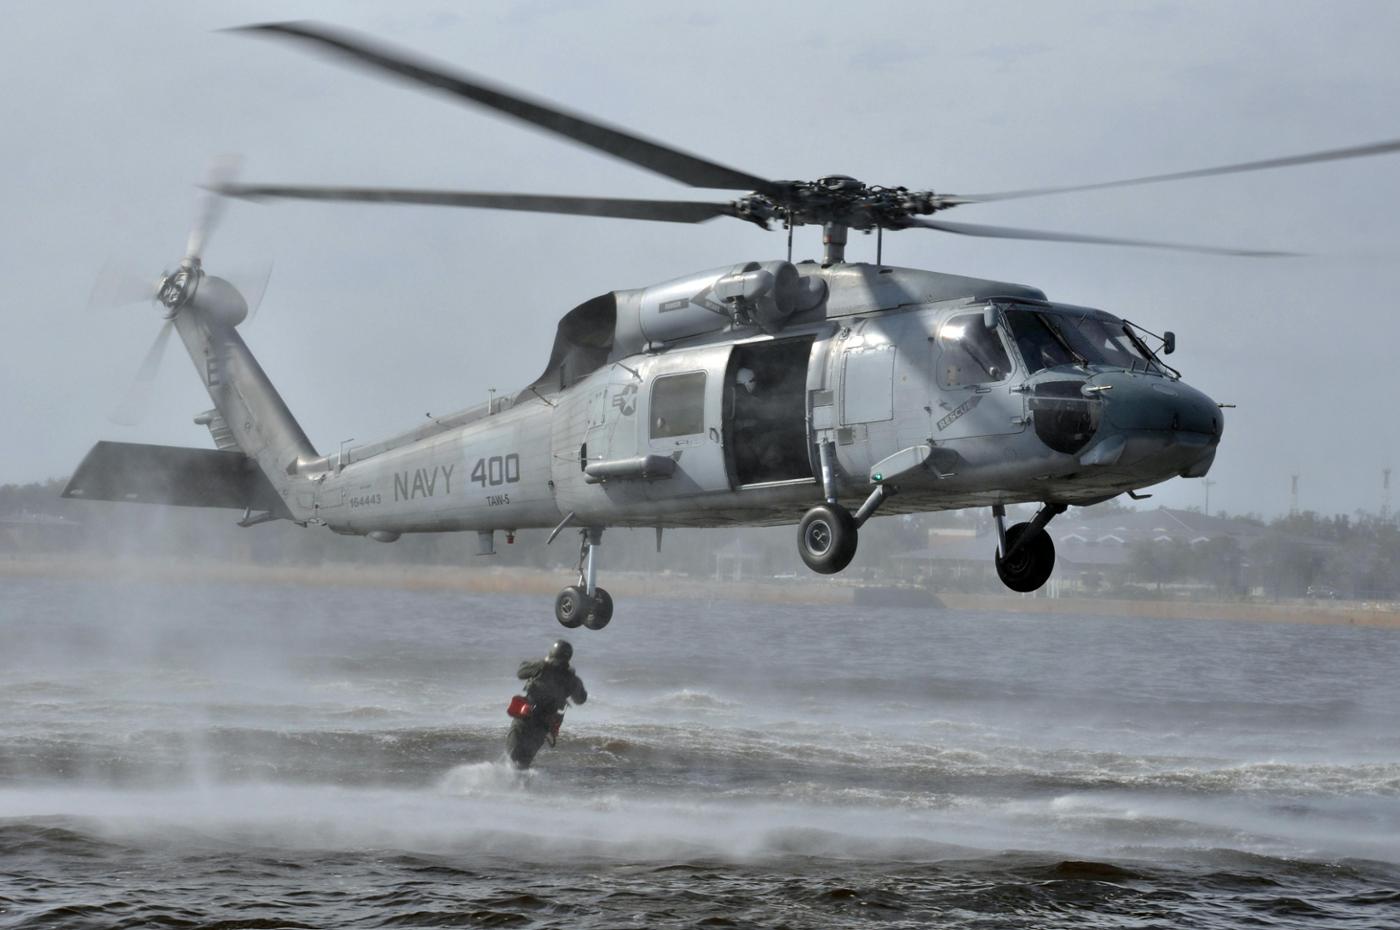 Un plongeur saute d'un hélicoptère SH-60F Sea Hawk de la marine des États-Unis pendant une opération de recherche et sauvetage. © US Navy
)